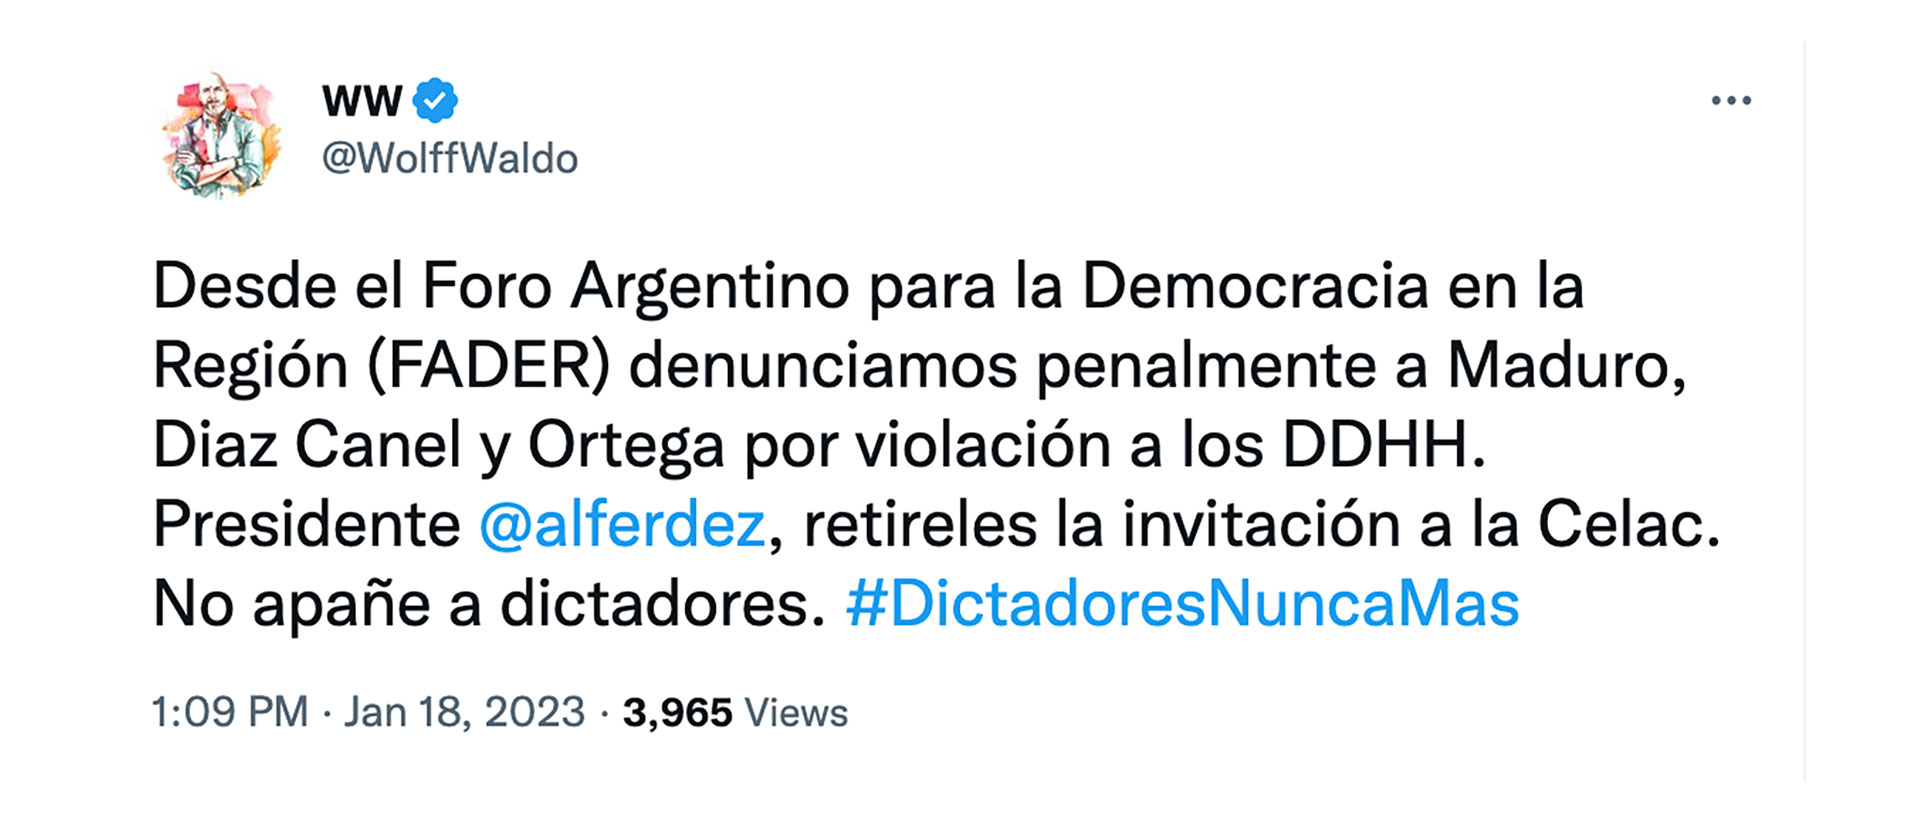 El tuit de Waldo Wolff en el que anunció su denuncia penal contra los mandatarios de Venezuela, Cuba y Nicaragua